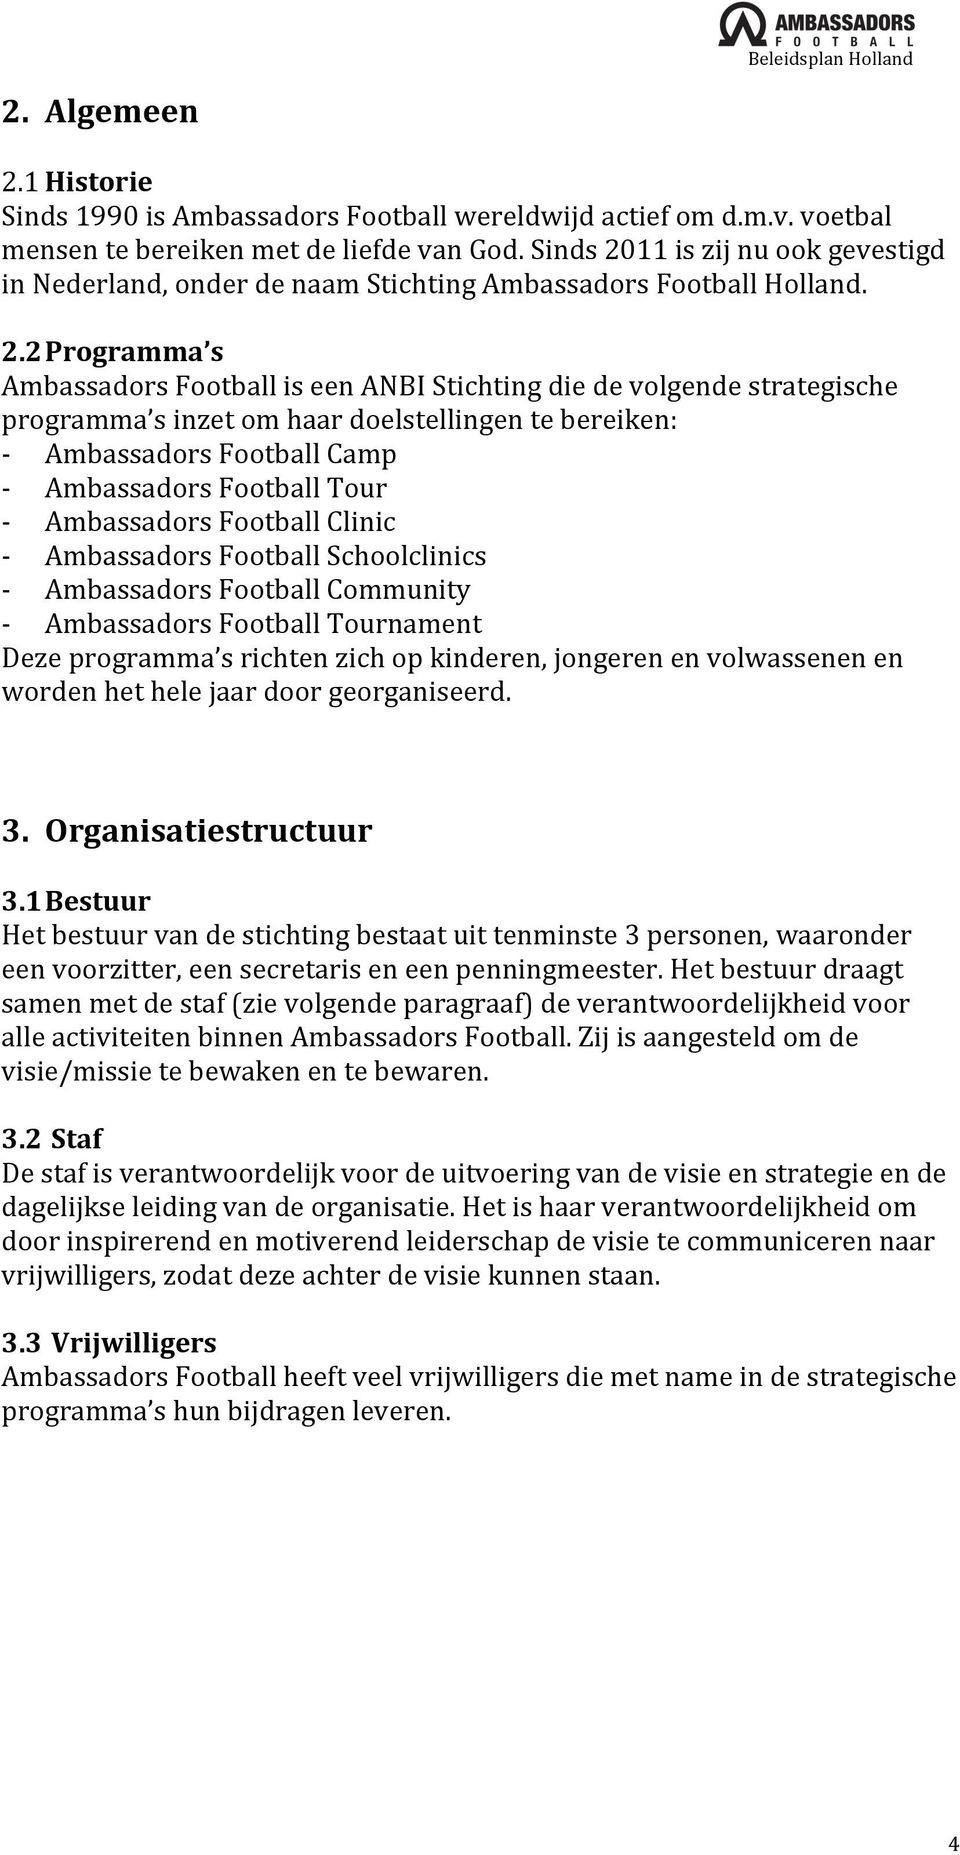 11 is zij nu ook gevestigd in Nederland, onder de naam Stichting Ambassadors Football Holland. 2.